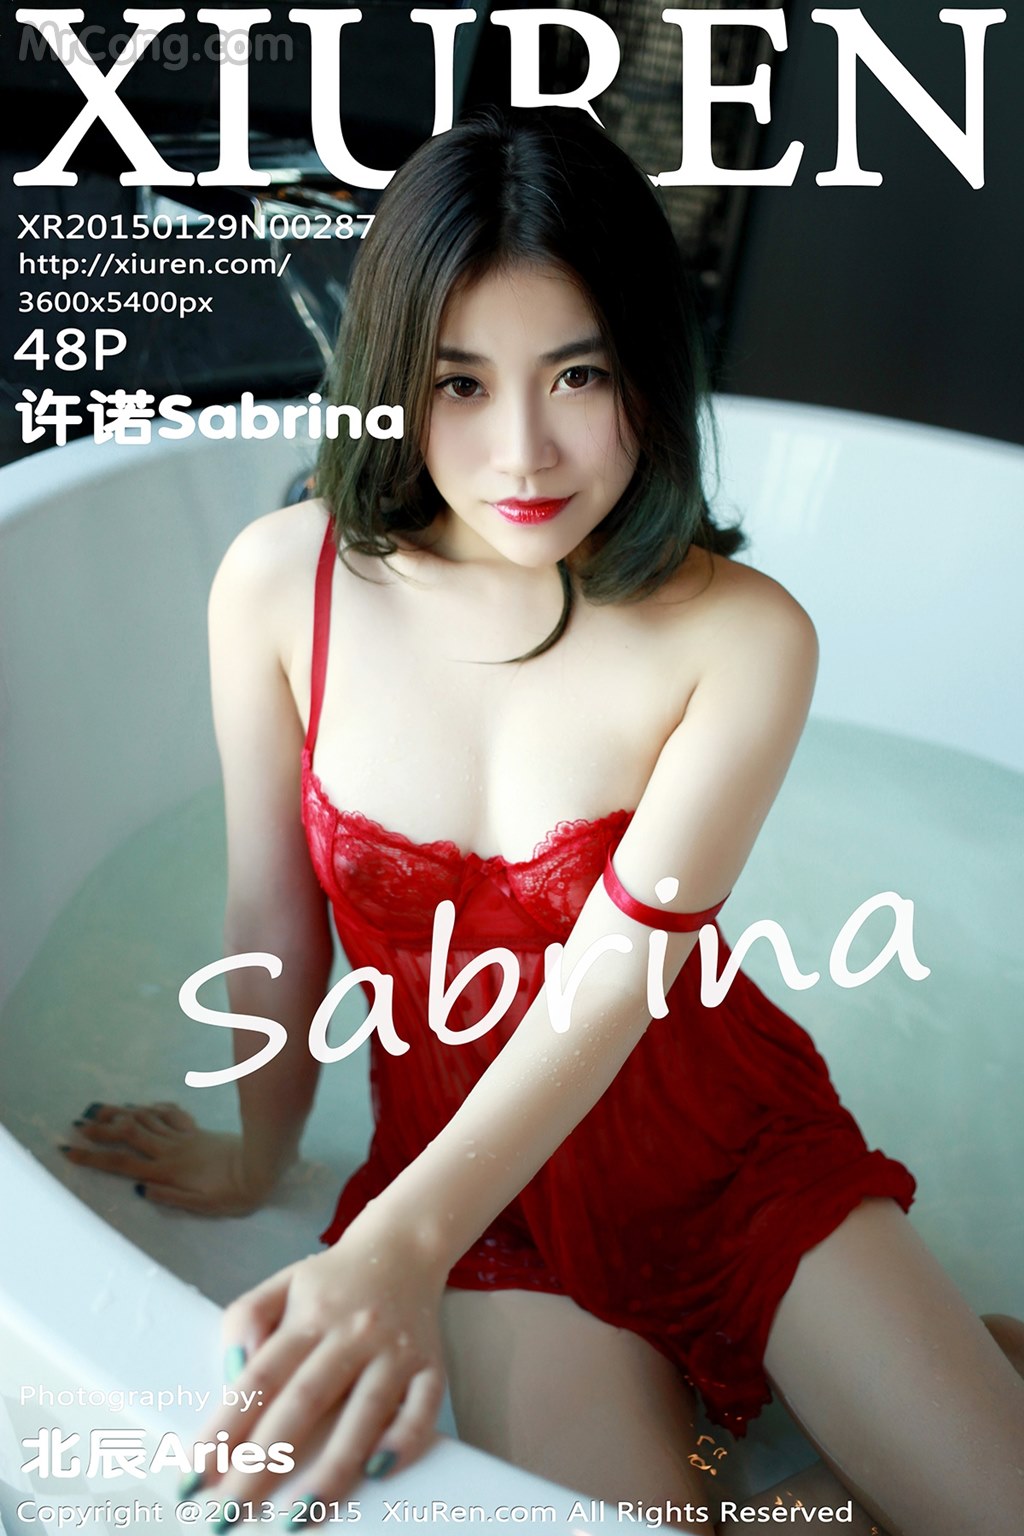 XIUREN No. 2287: Model Sabrina (许诺) (49 photos) photo 1-0